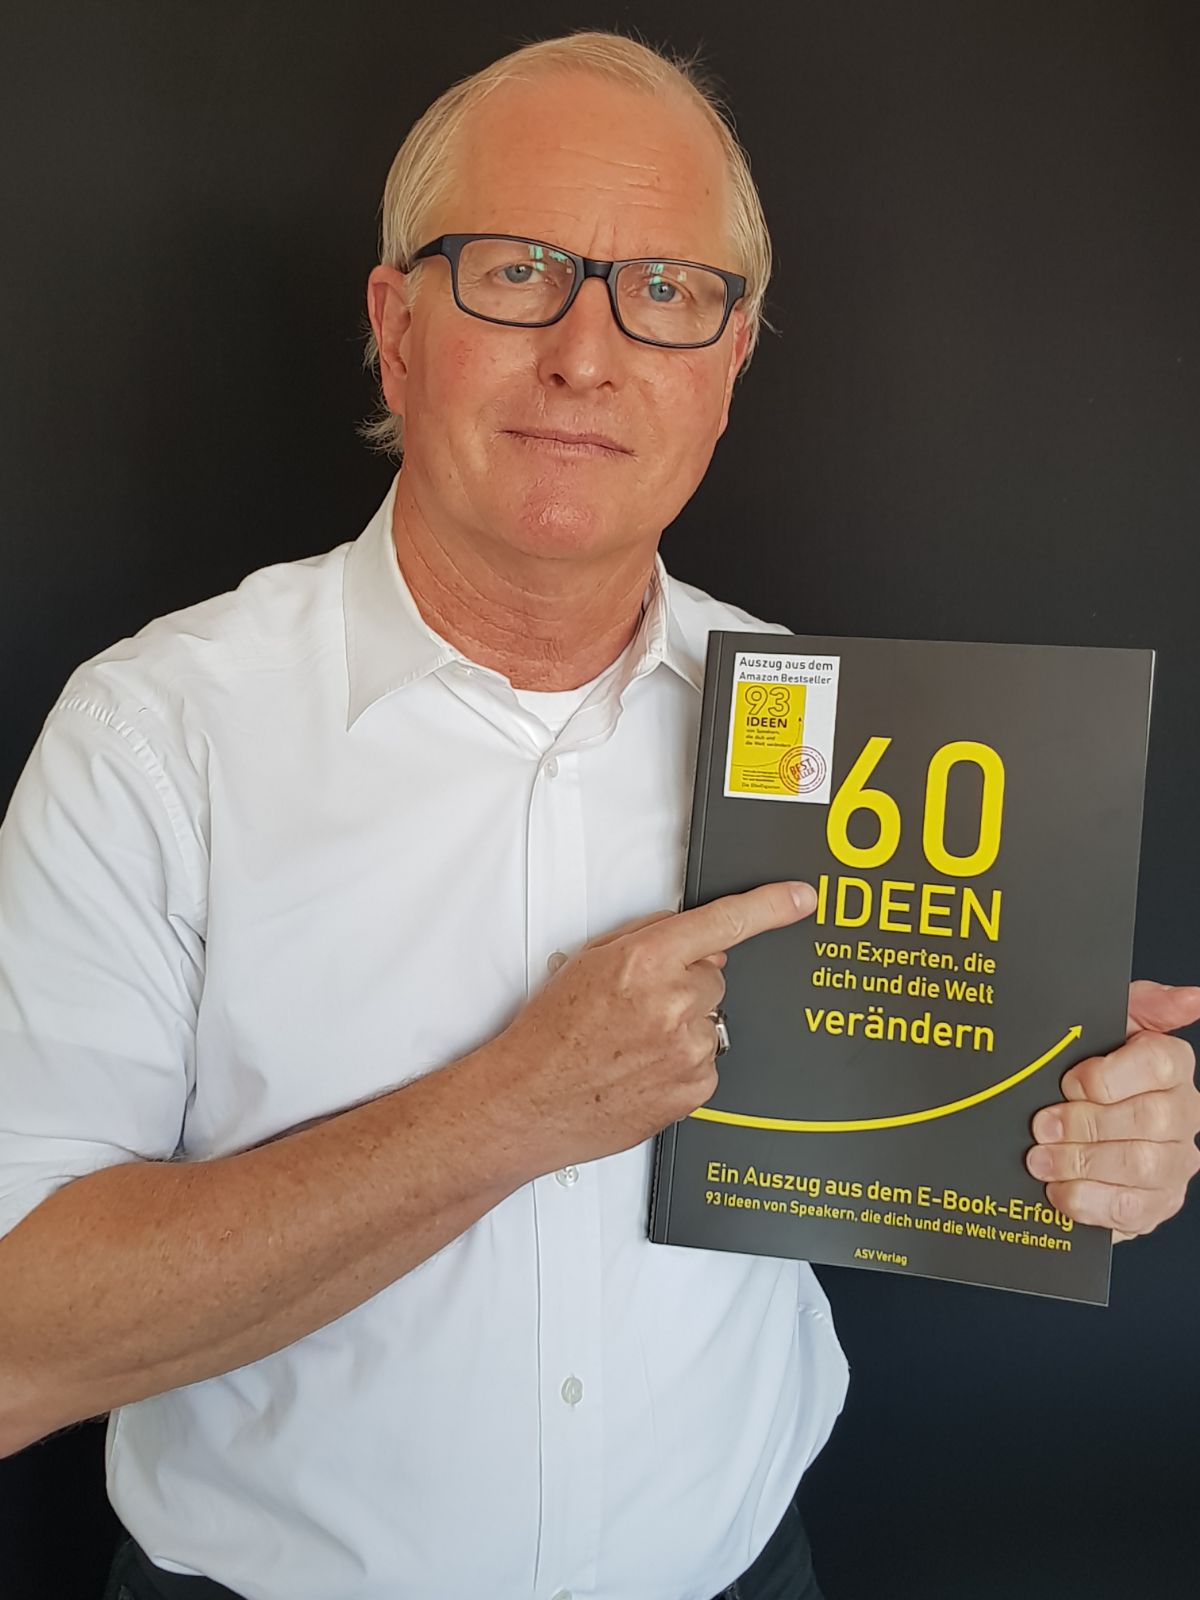 Michael Krüger 60 Ideen Buch